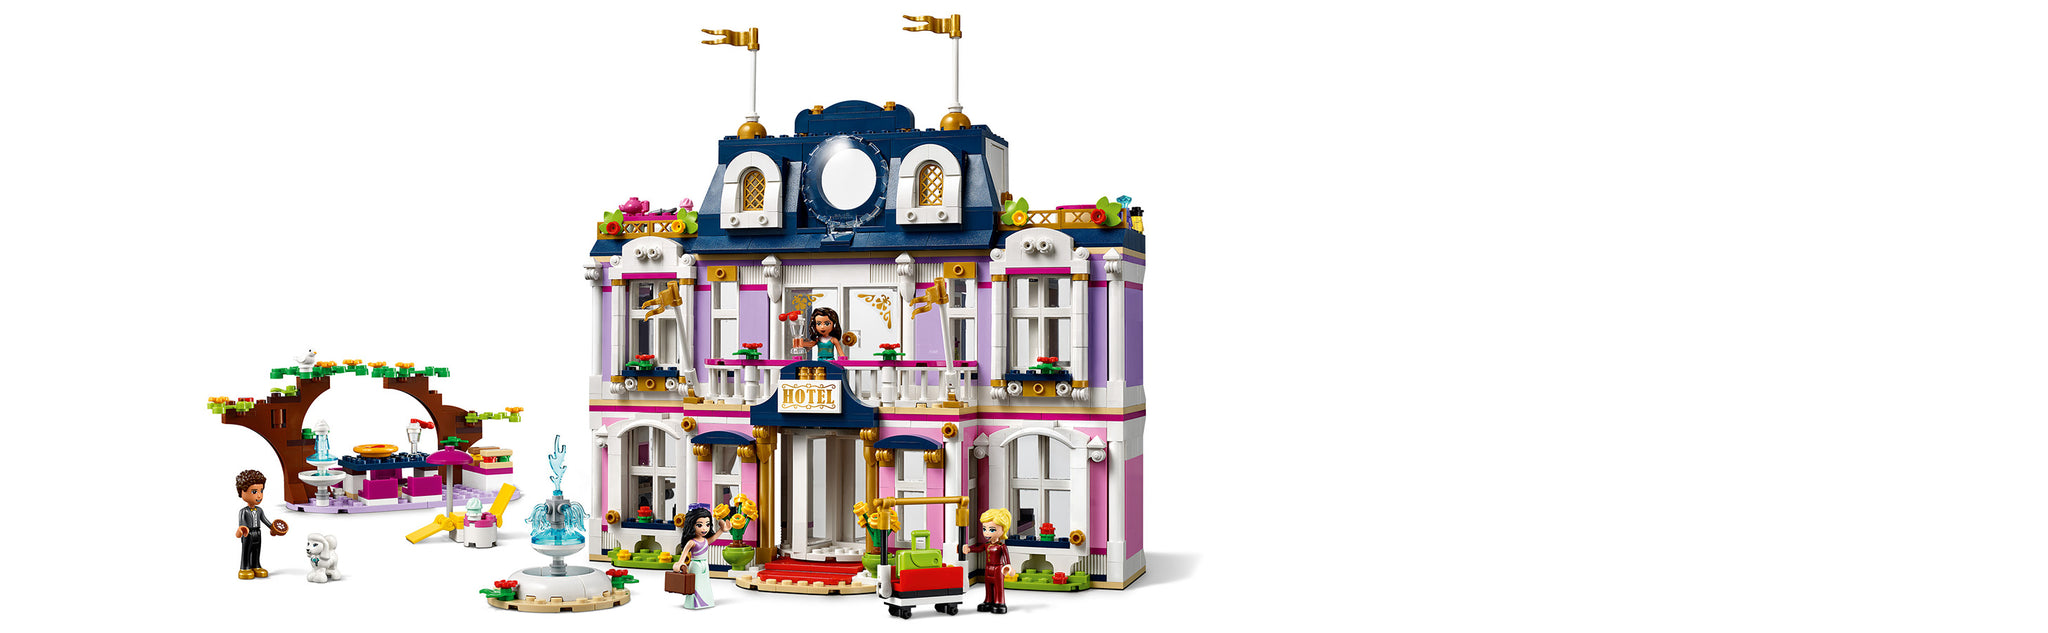 LEGO 41684 Heartlake City Large Luxury Hotel